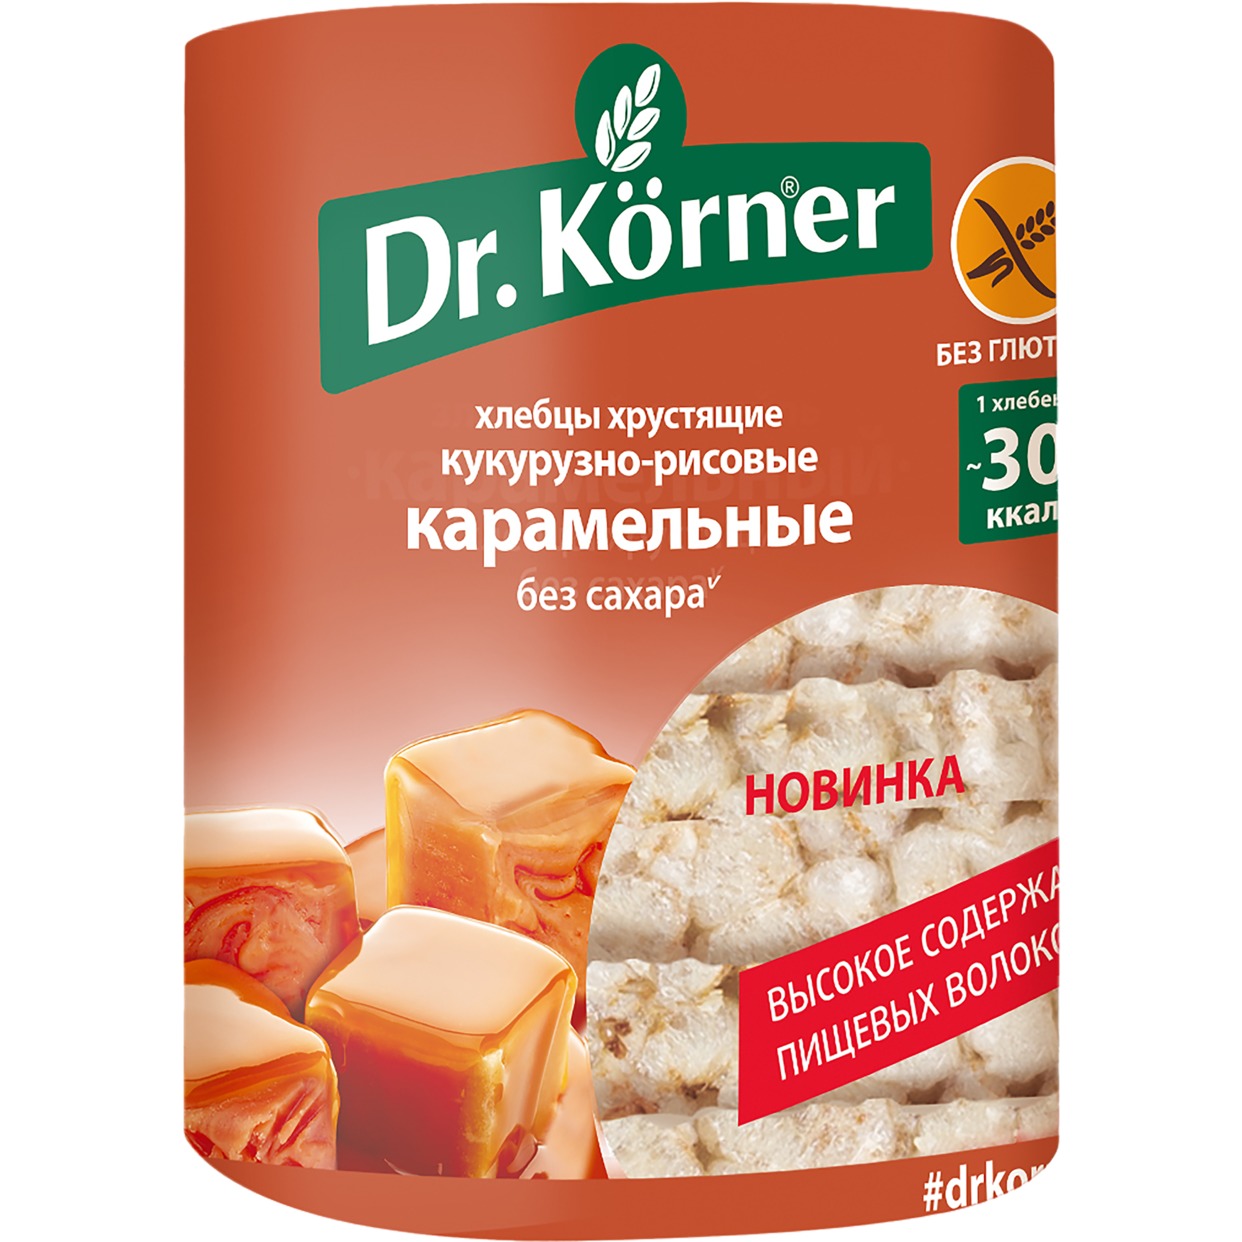 Хлебцы Карамельные Dr.Korner, кукурузно-рисовые, 90 г по акции в Пятерочке